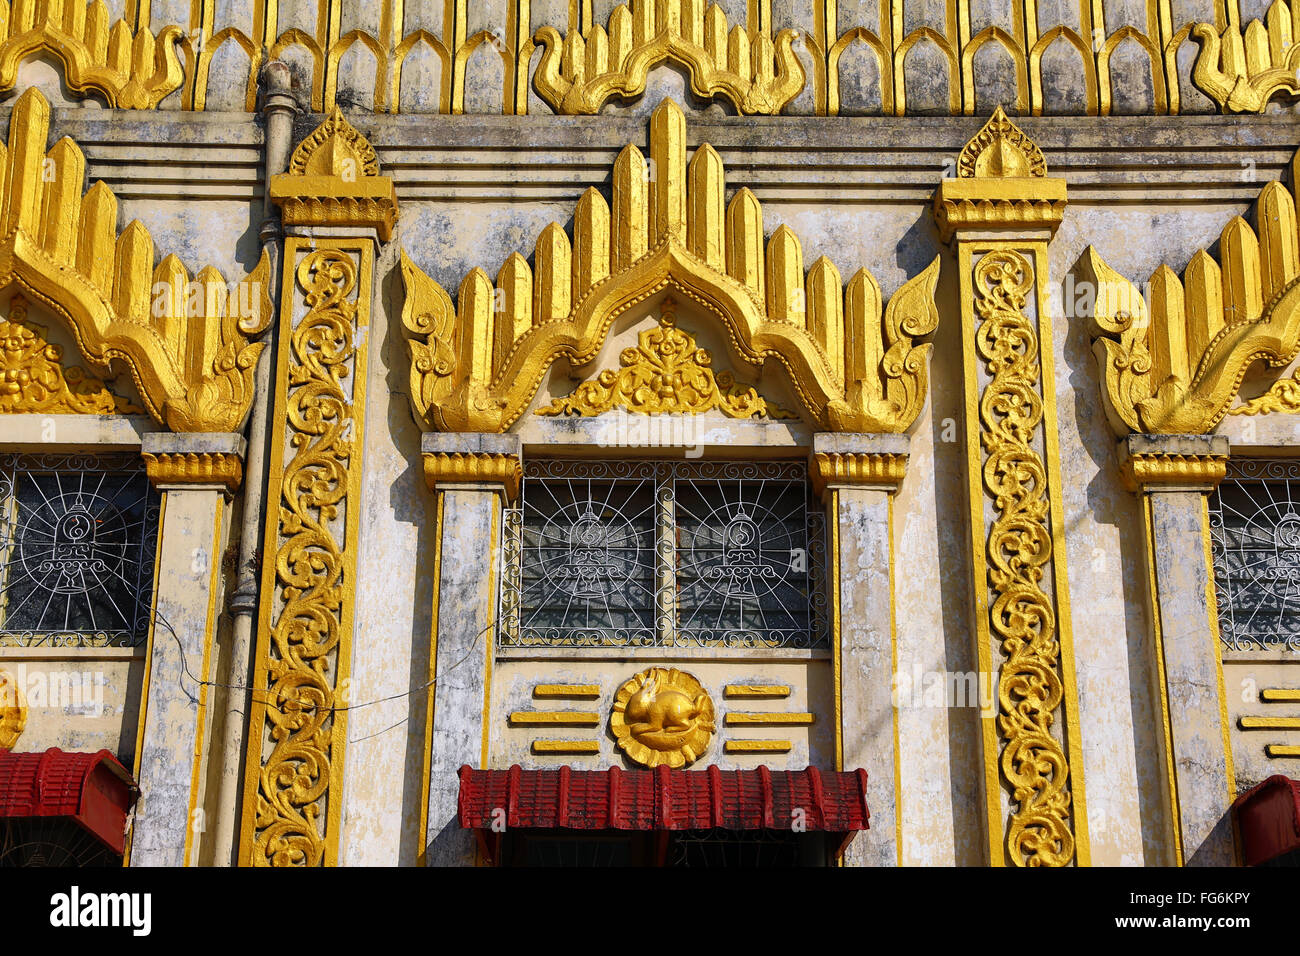 Window decorations of Botahtaung Pagoda, Yangon, Myanmar Stock Photo